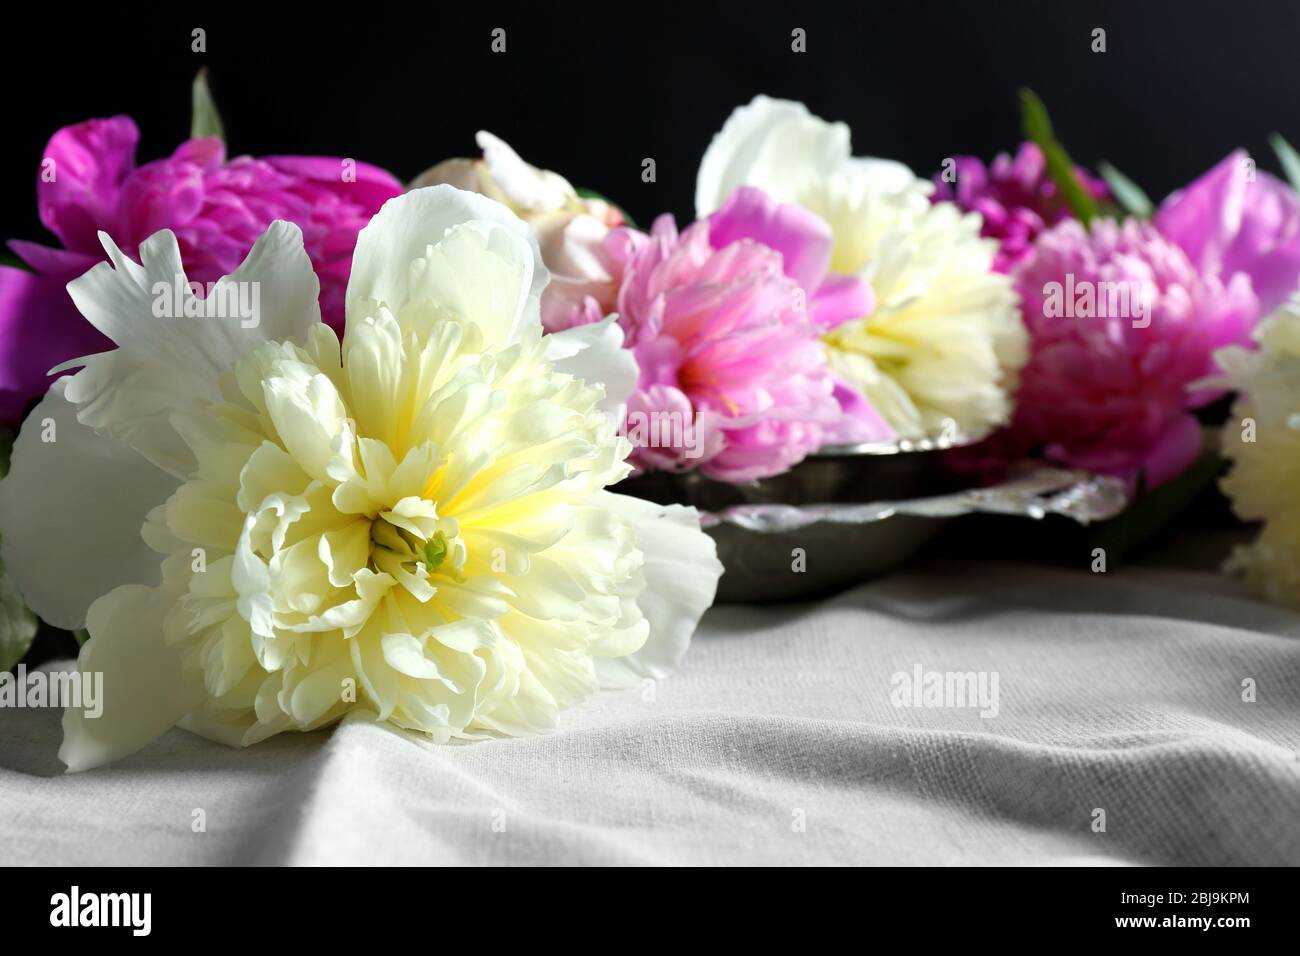 Composition avec fleurs pivoines fraîches sur la fermeture de tissu blanc Banque D'Images